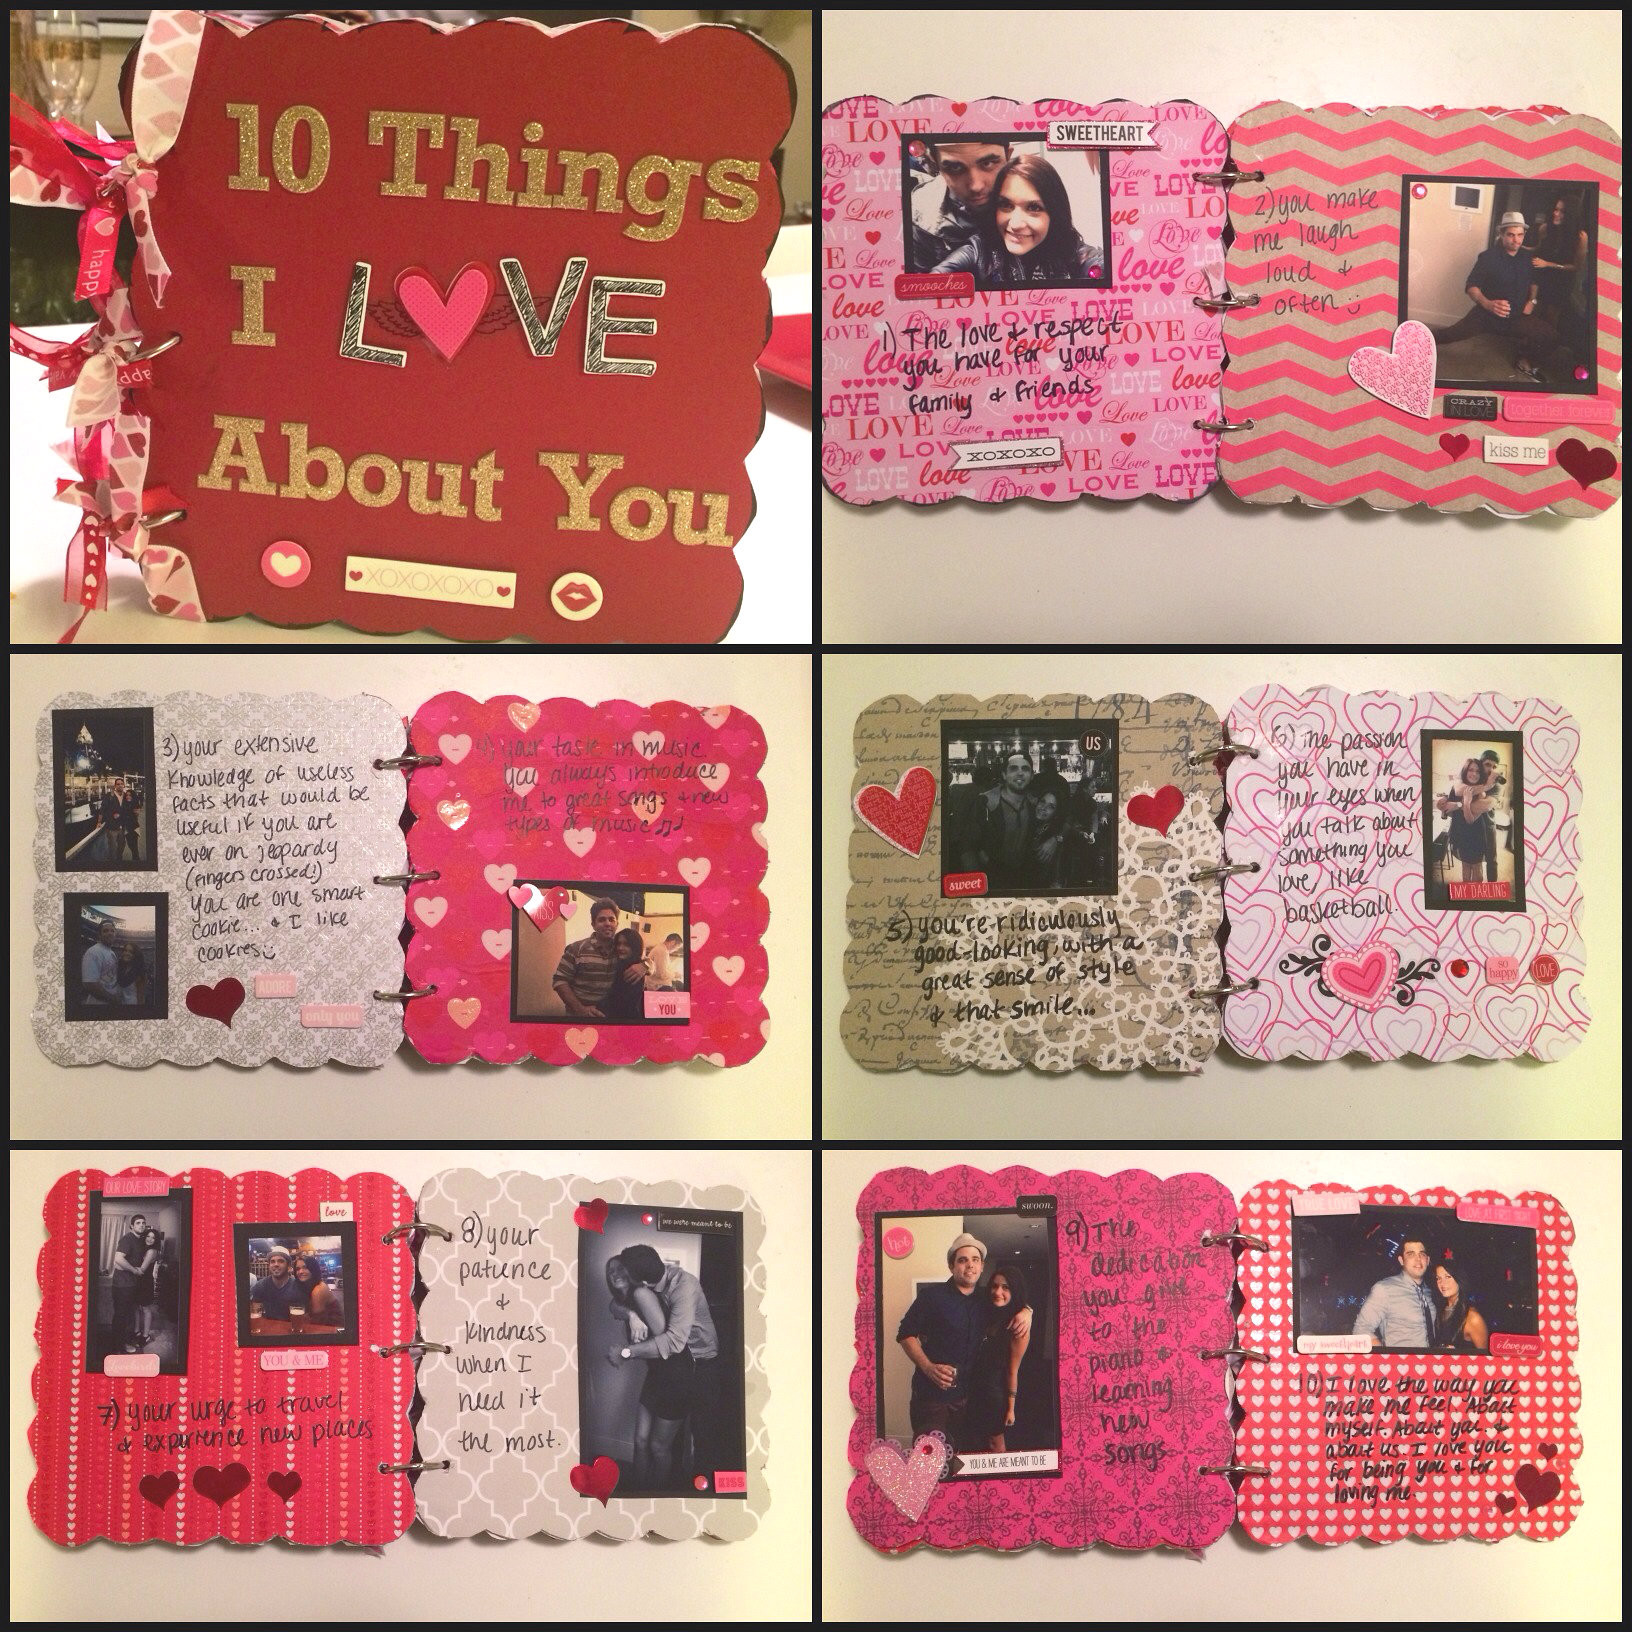 Best ideas about Valentine Day Gift Ideas For Boyfriend Homemade
. Save or Pin Boyfriend Gift Idea Chipboard Scrapbook Now.